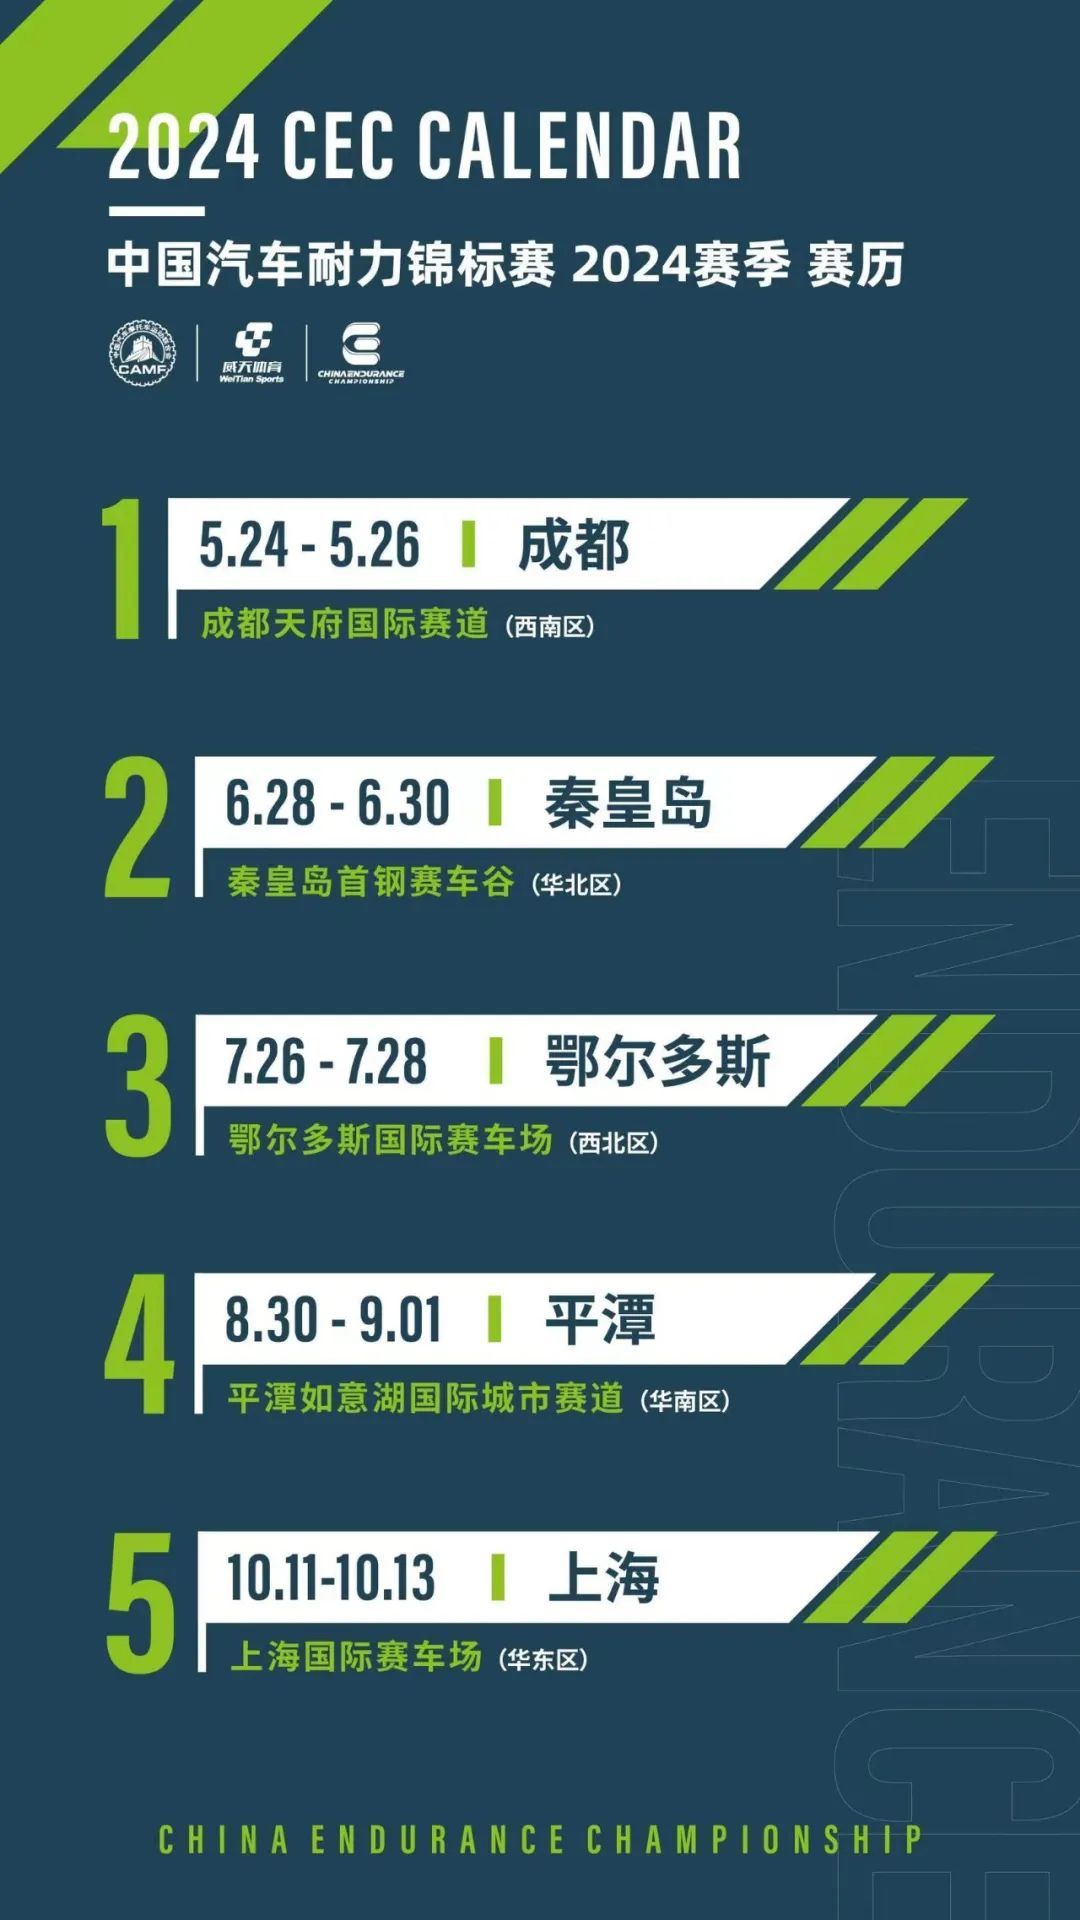 ปฏิทินฤดูกาล China Endurance Championship ปี 2024